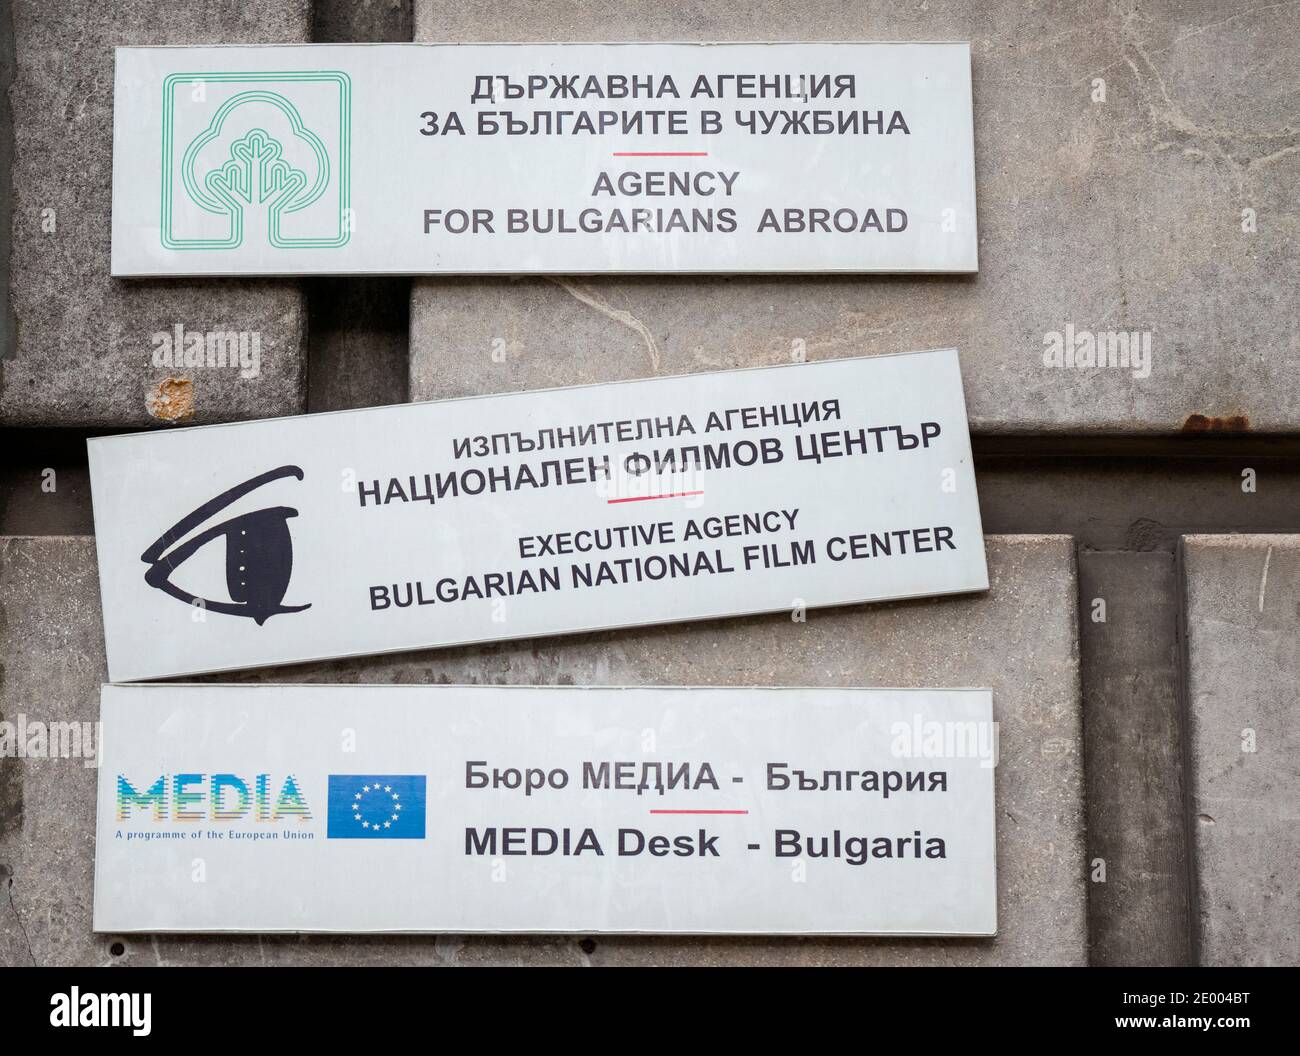 Verschiedene Schilder für die Agentur für Bulgaren im Ausland, Media Desk Bulgarien und das Bulgarische Nationale Filmzentrum in Sofia Bulgarien Osteuropa EU Stockfoto